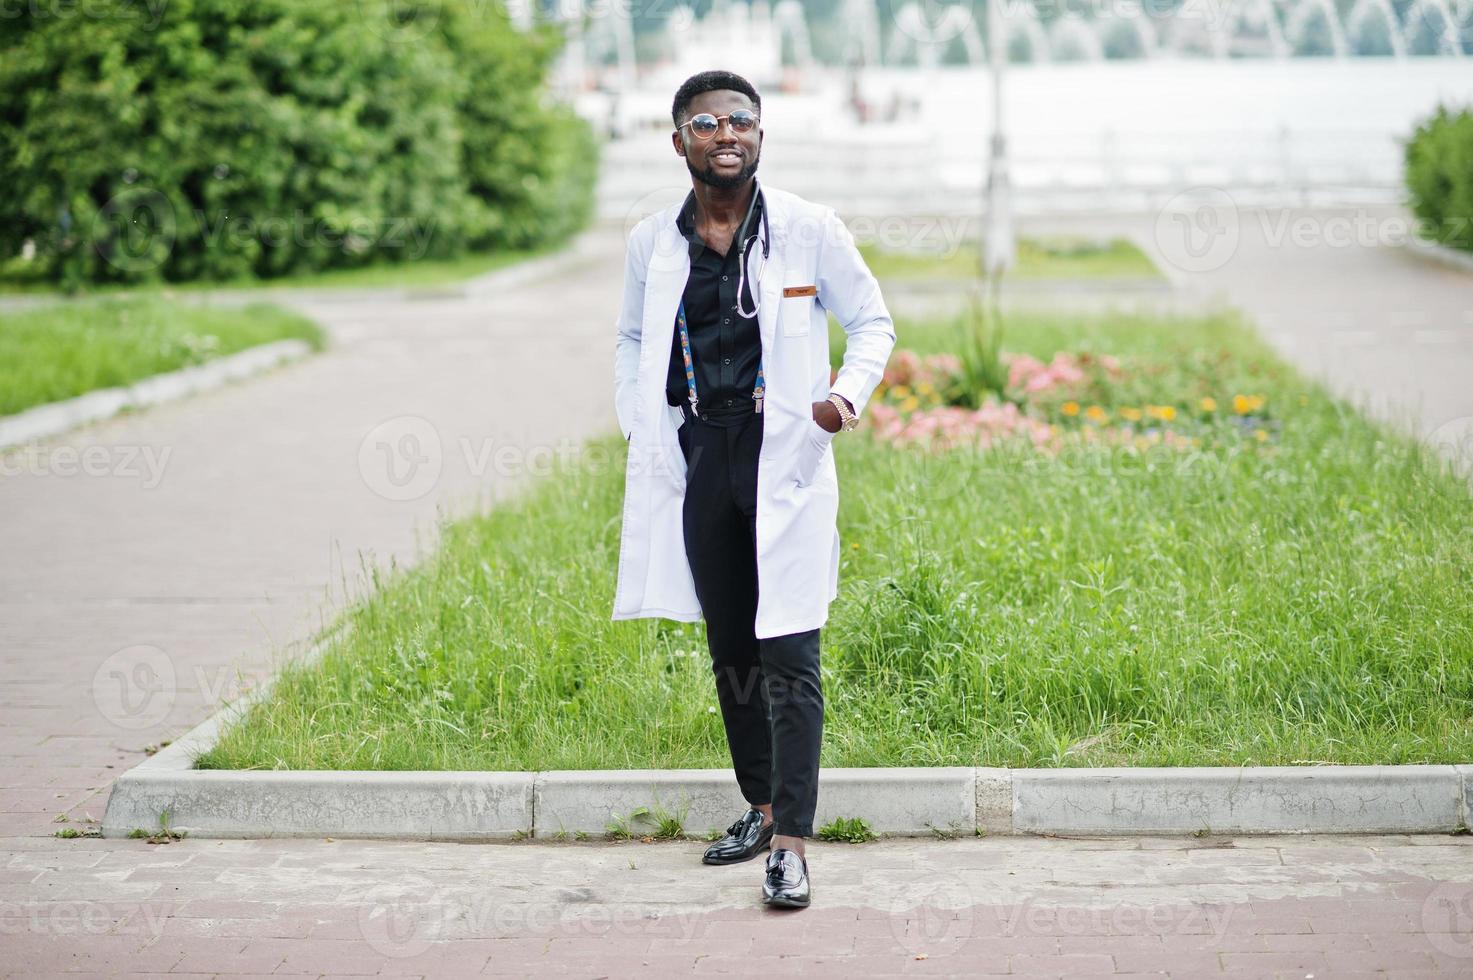 jeune médecin de sexe masculin afro-américain en blouse blanche avec un stéthoscope posé à l'extérieur. photo